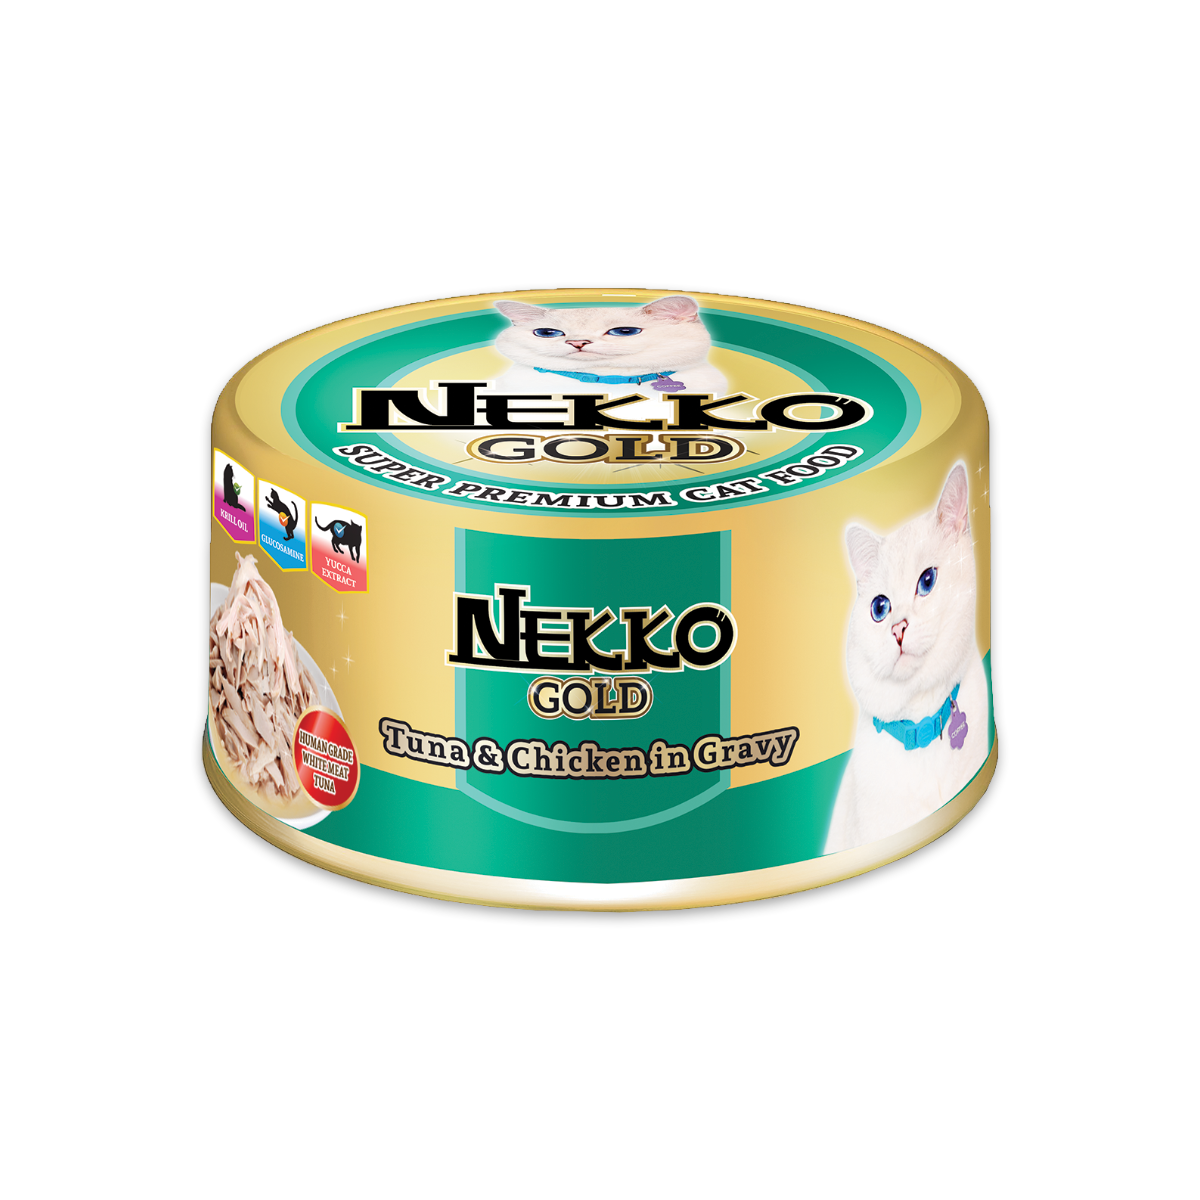 Nekko Gold เน็กโกะ โกลด์ อาหารเปียกแมวแบบกระป๋อง รสปลาทูน่าและเนื้อไก่ในน้ำเกรวี่ ขนาด 85 กรัม (12 กระป๋อง)